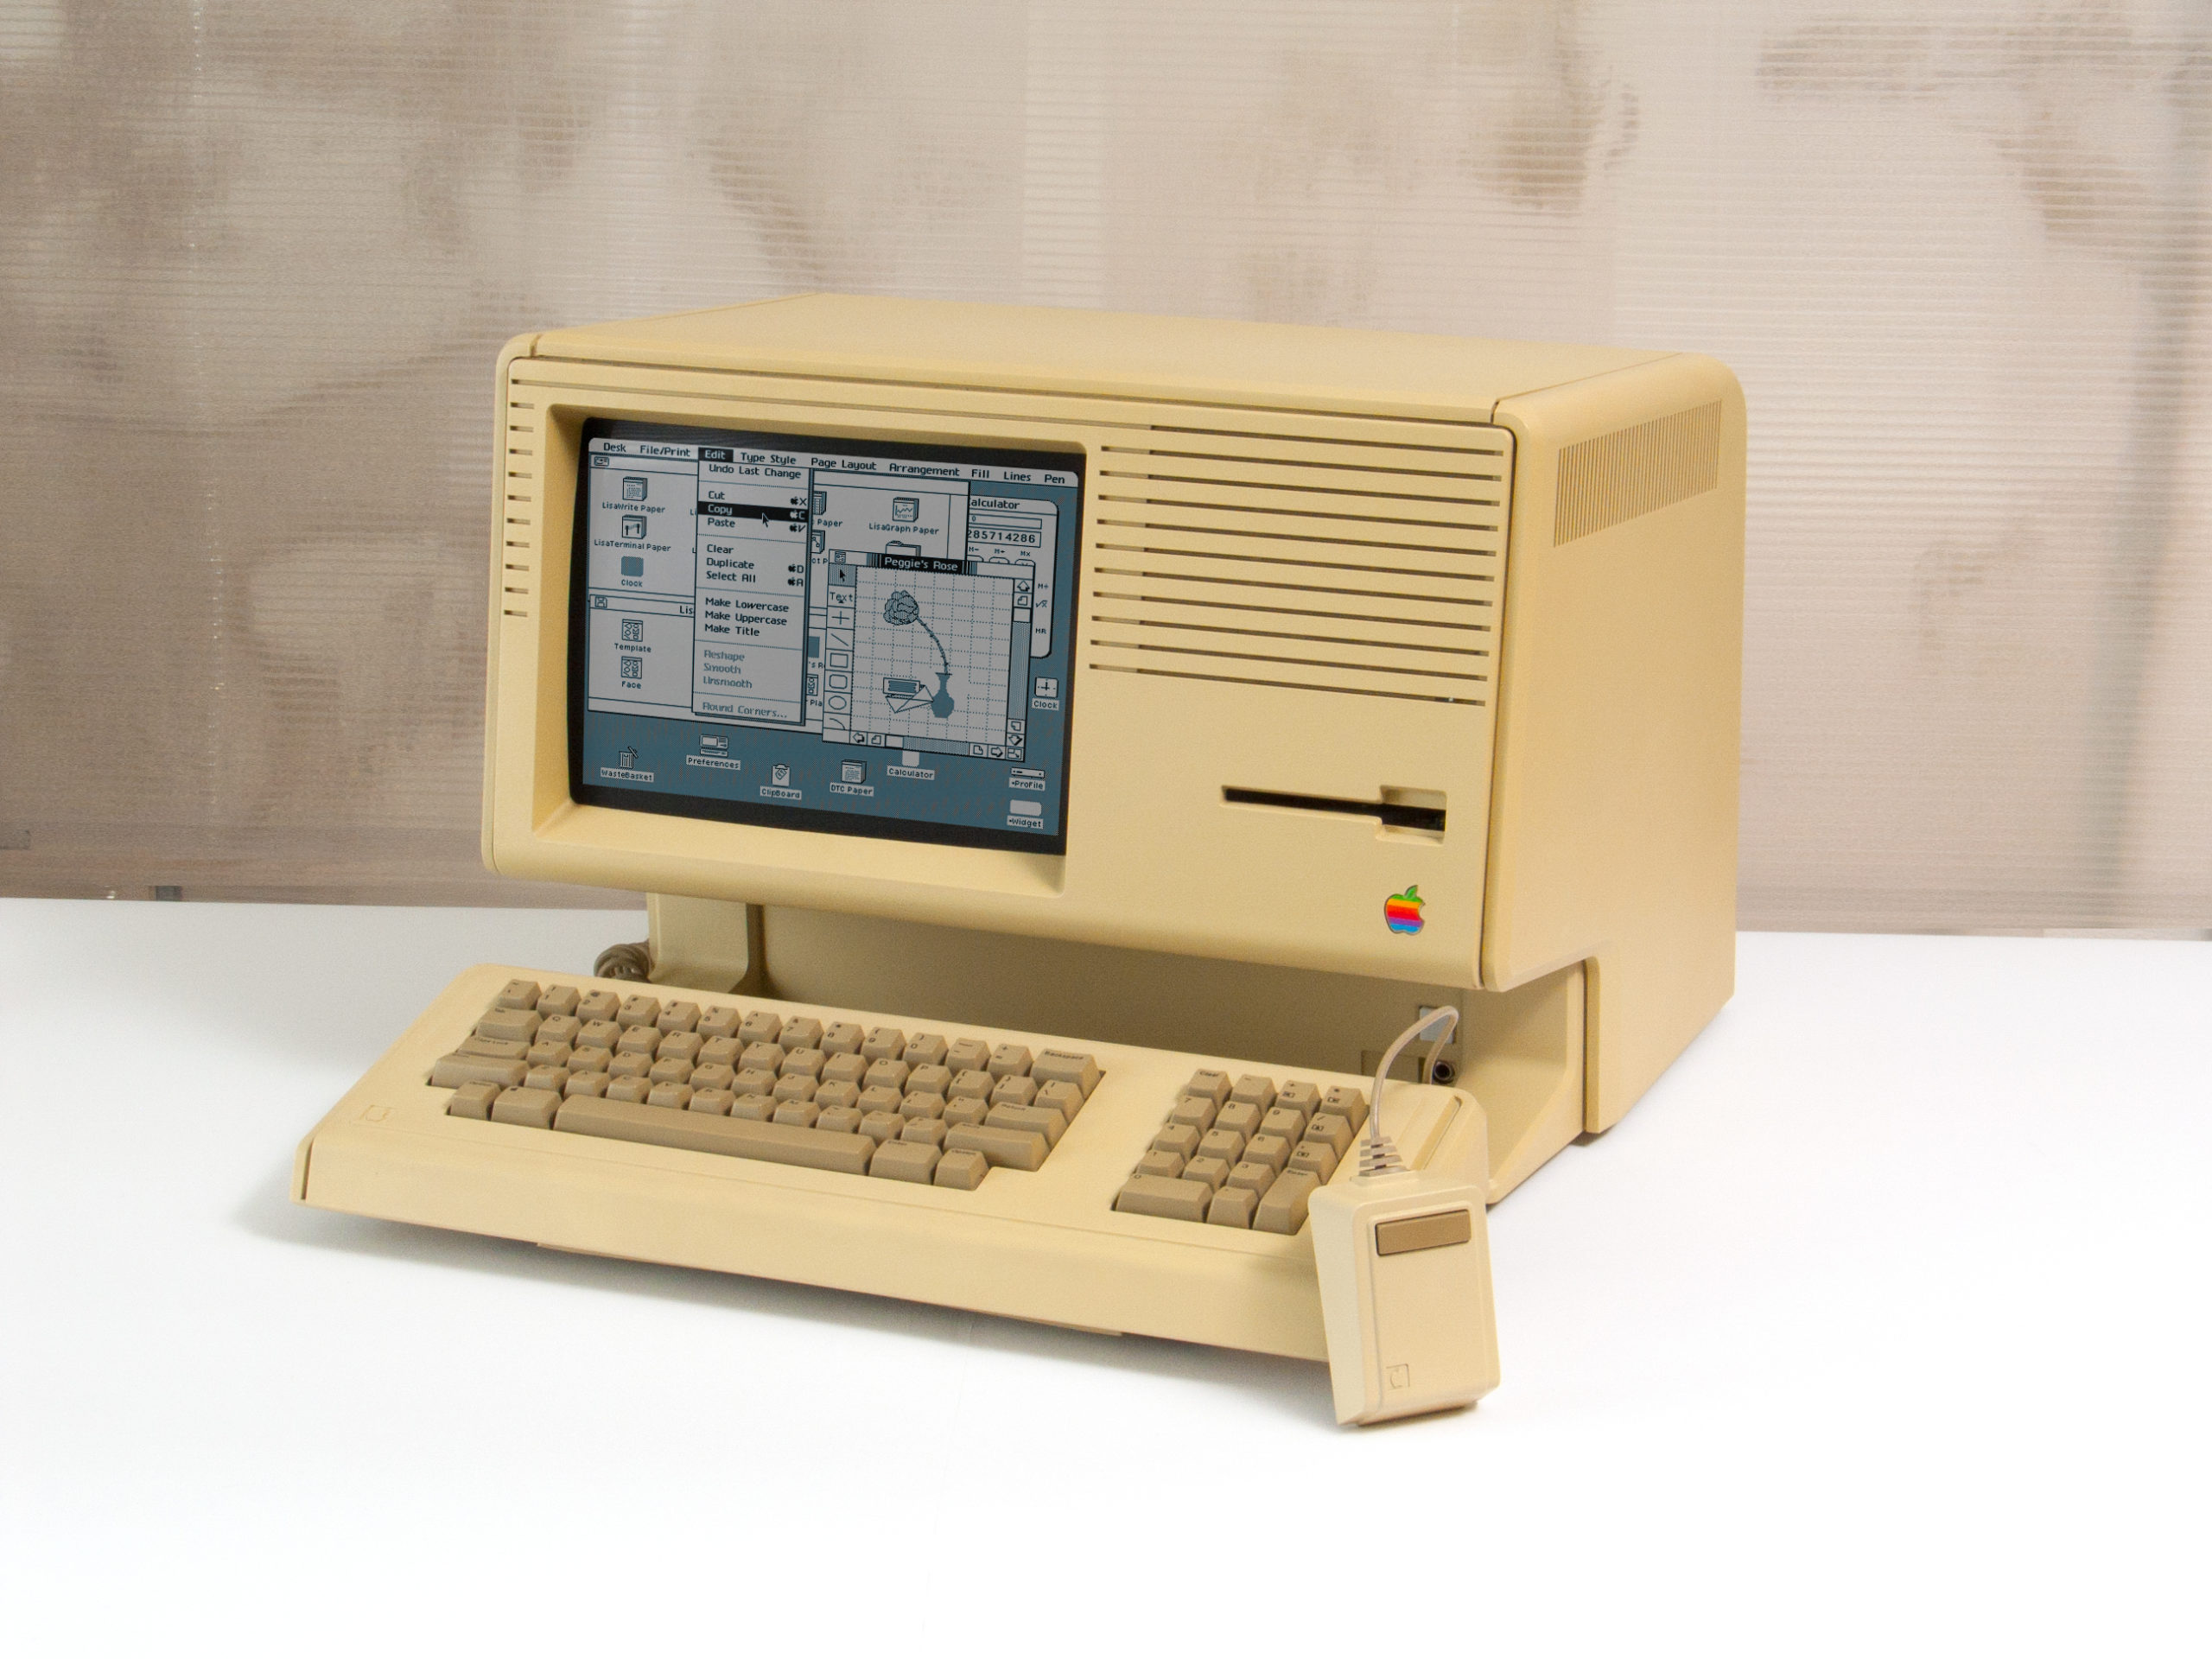 Apple II - Wikipedia